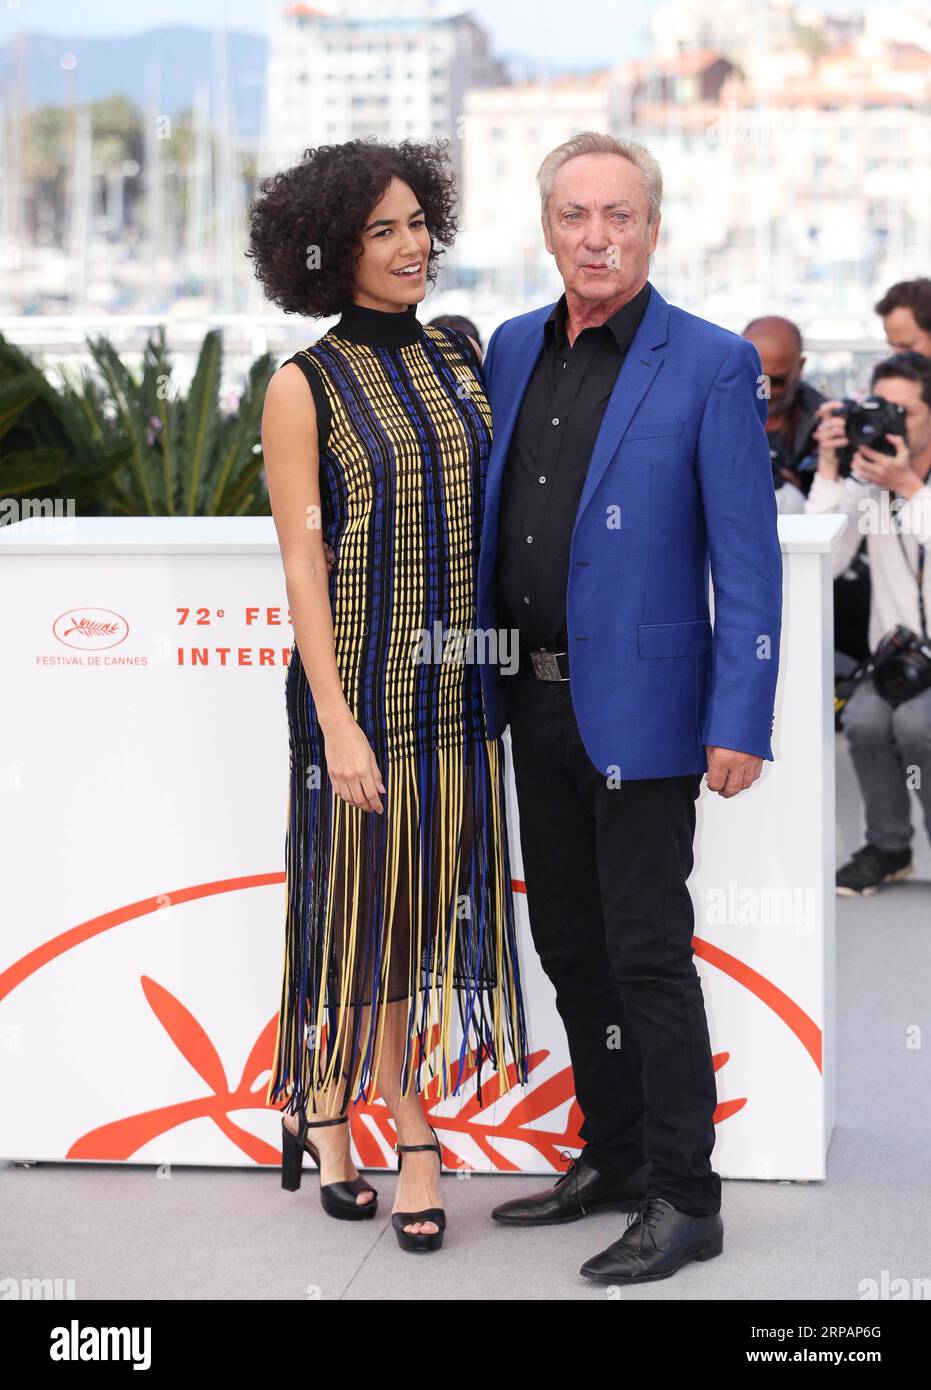 (190516) -- CANNES, 16 maggio 2019 (Xinhua) -- i membri del cast Udo Kier (R) e Barbara Colen posano durante una photocall per il film Bacurau al 72° Festival di Cannes, in Francia, 16 maggio 2019. Bacurau gareggerà per la Palme d Or con altri 20 lungometraggi durante il 72° Festival di Cannes che si terrà dal 14 al 25 maggio. (Xinhua/Gao Jing) FRANCE-CANNES-FILM FESTIVAL-PHOTOCALL-BACURAU PUBLICATIONxNOTxINxCHN Foto Stock